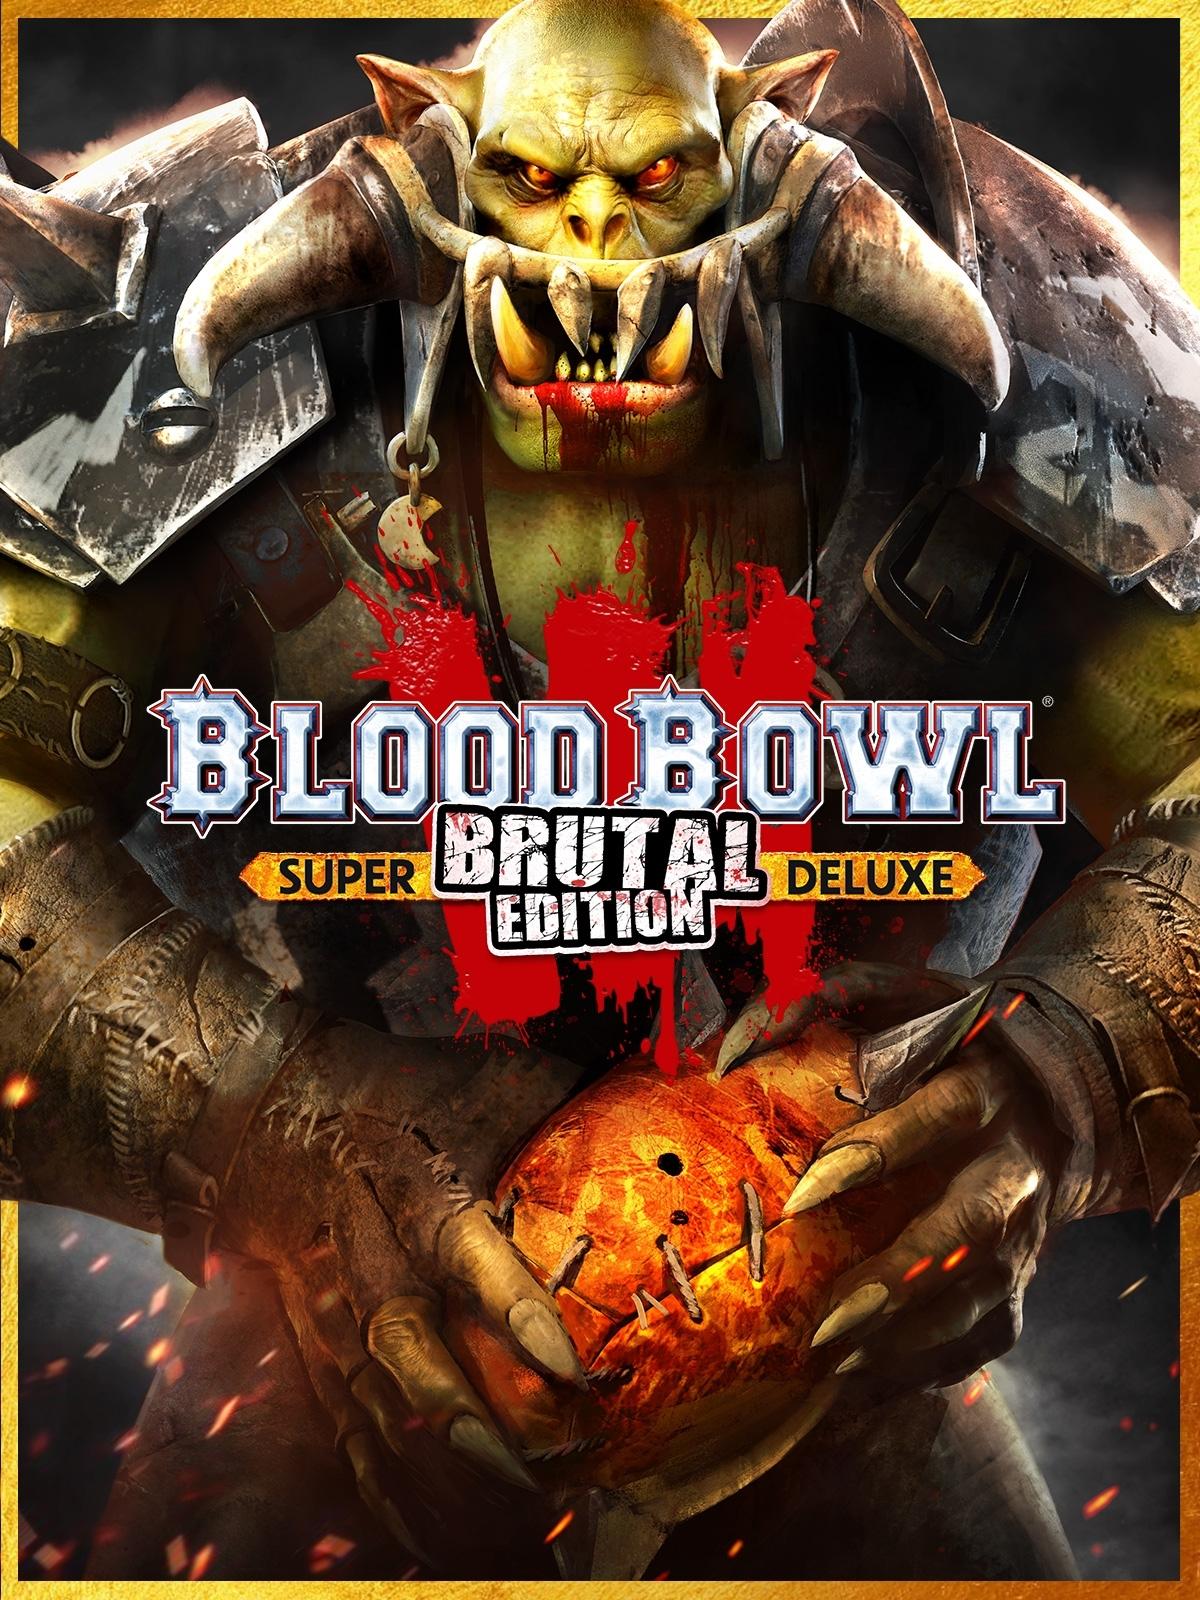 Blood Bowl 3 - Brutal Edition Pre-order | ROW 1 (cd7dc571-172d-4af8-8b0f-32abf0ef2032)